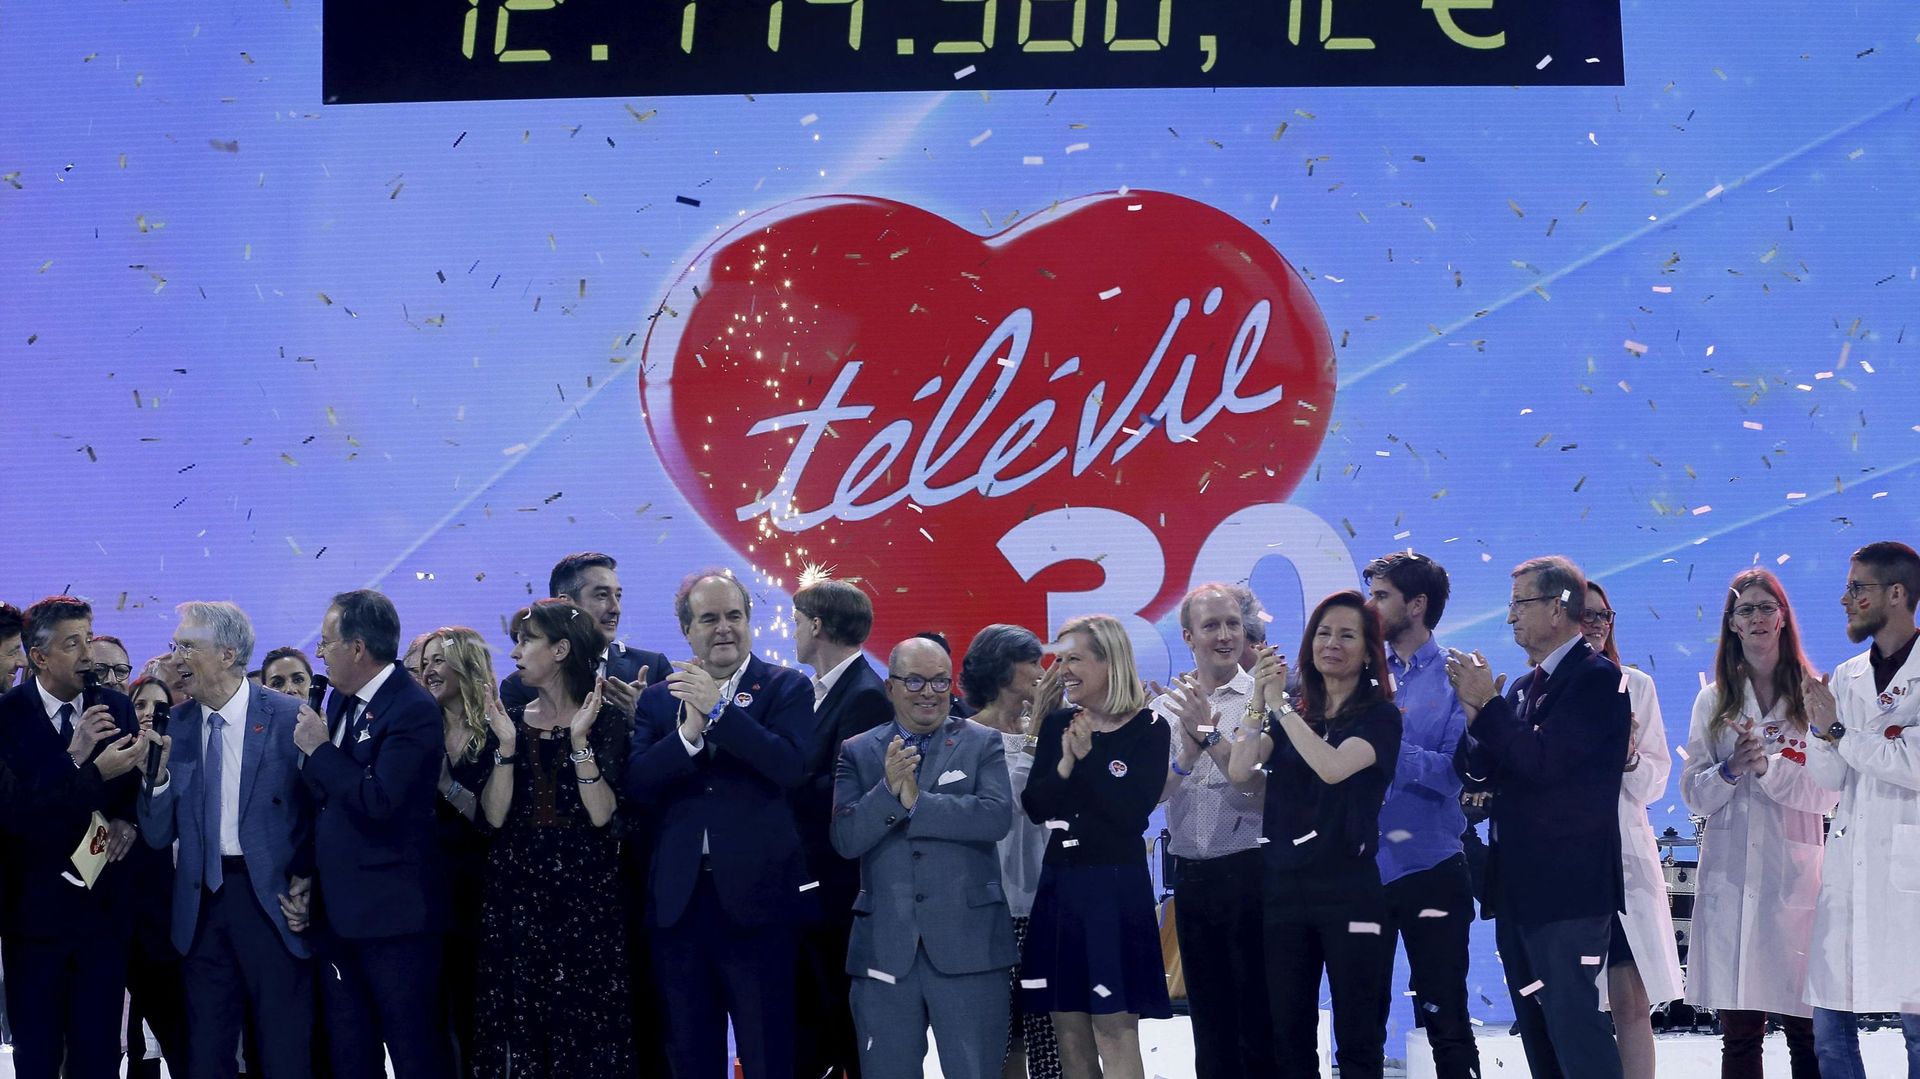 Nouveau record pour le Télévie qui récolte 12,1 millions d'euros pour sa 30e édition (2)